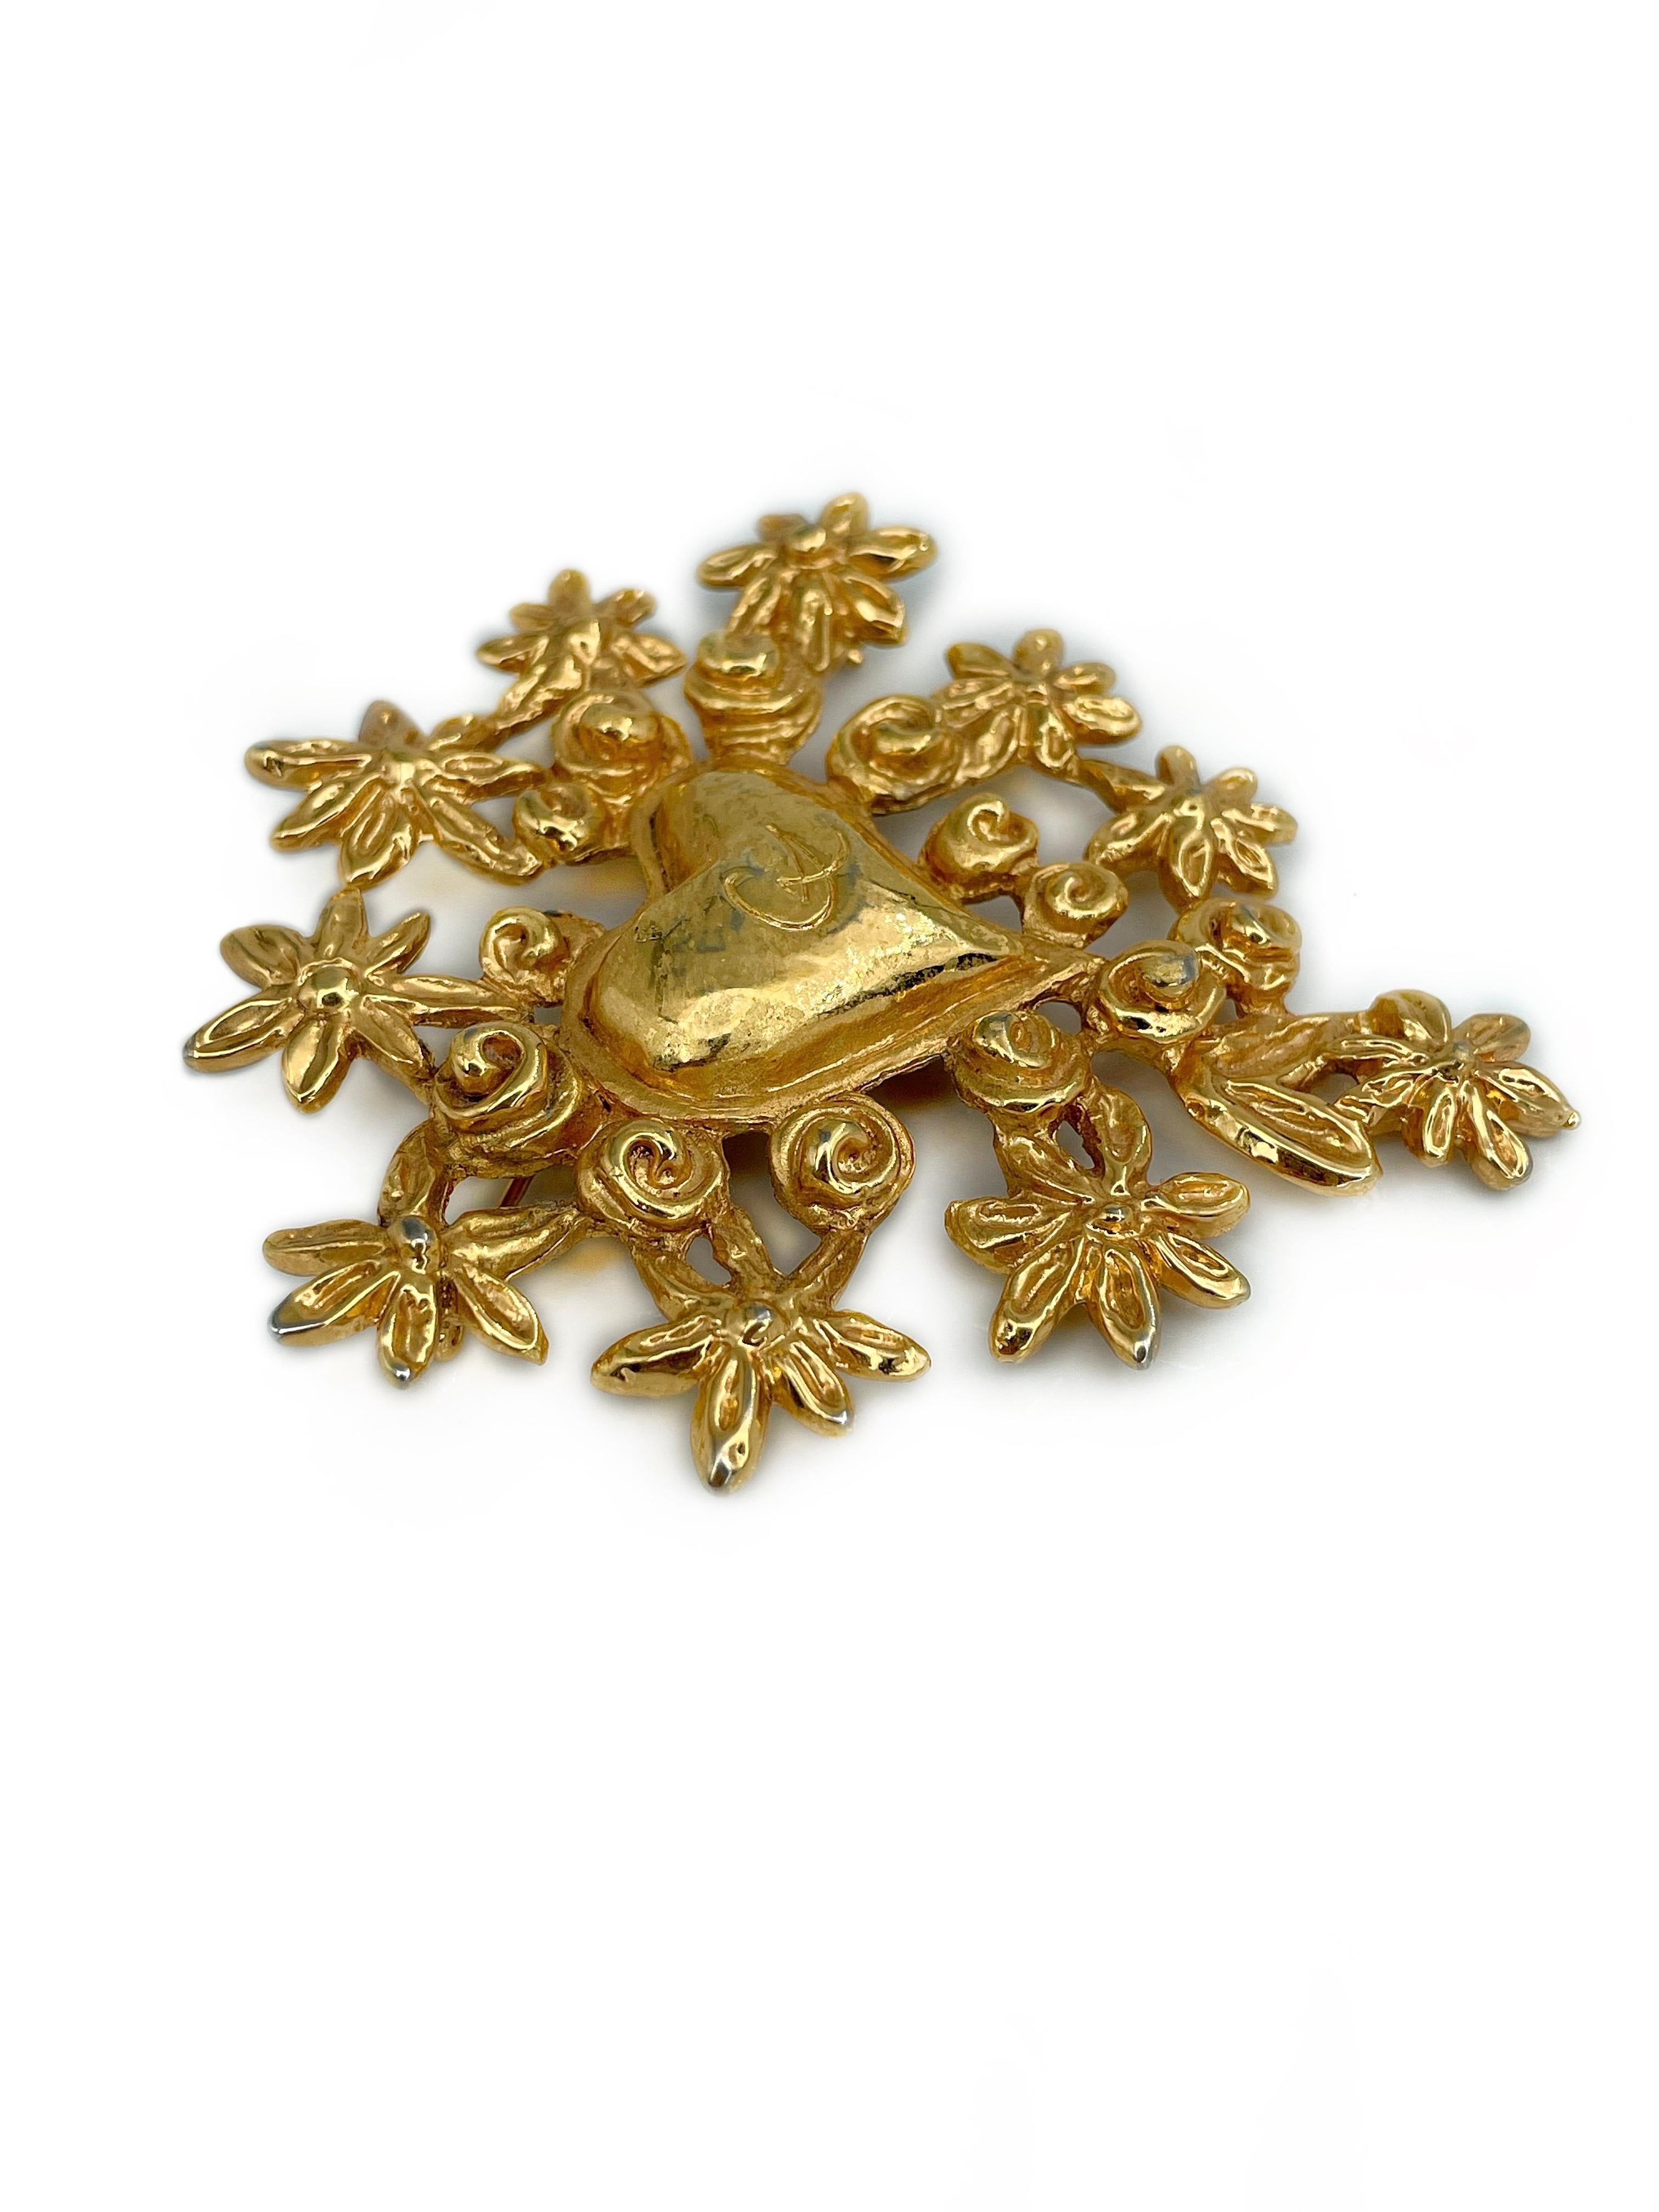 Il s'agit d'une magnifique broche en forme de cœur et de fleur avec le logo CL en ton or, créée par Christian Lacroix en 1993. La pièce est plaquée or. 

Édition limitée. Produit spécialement pour la période de Noël.

Signé : 